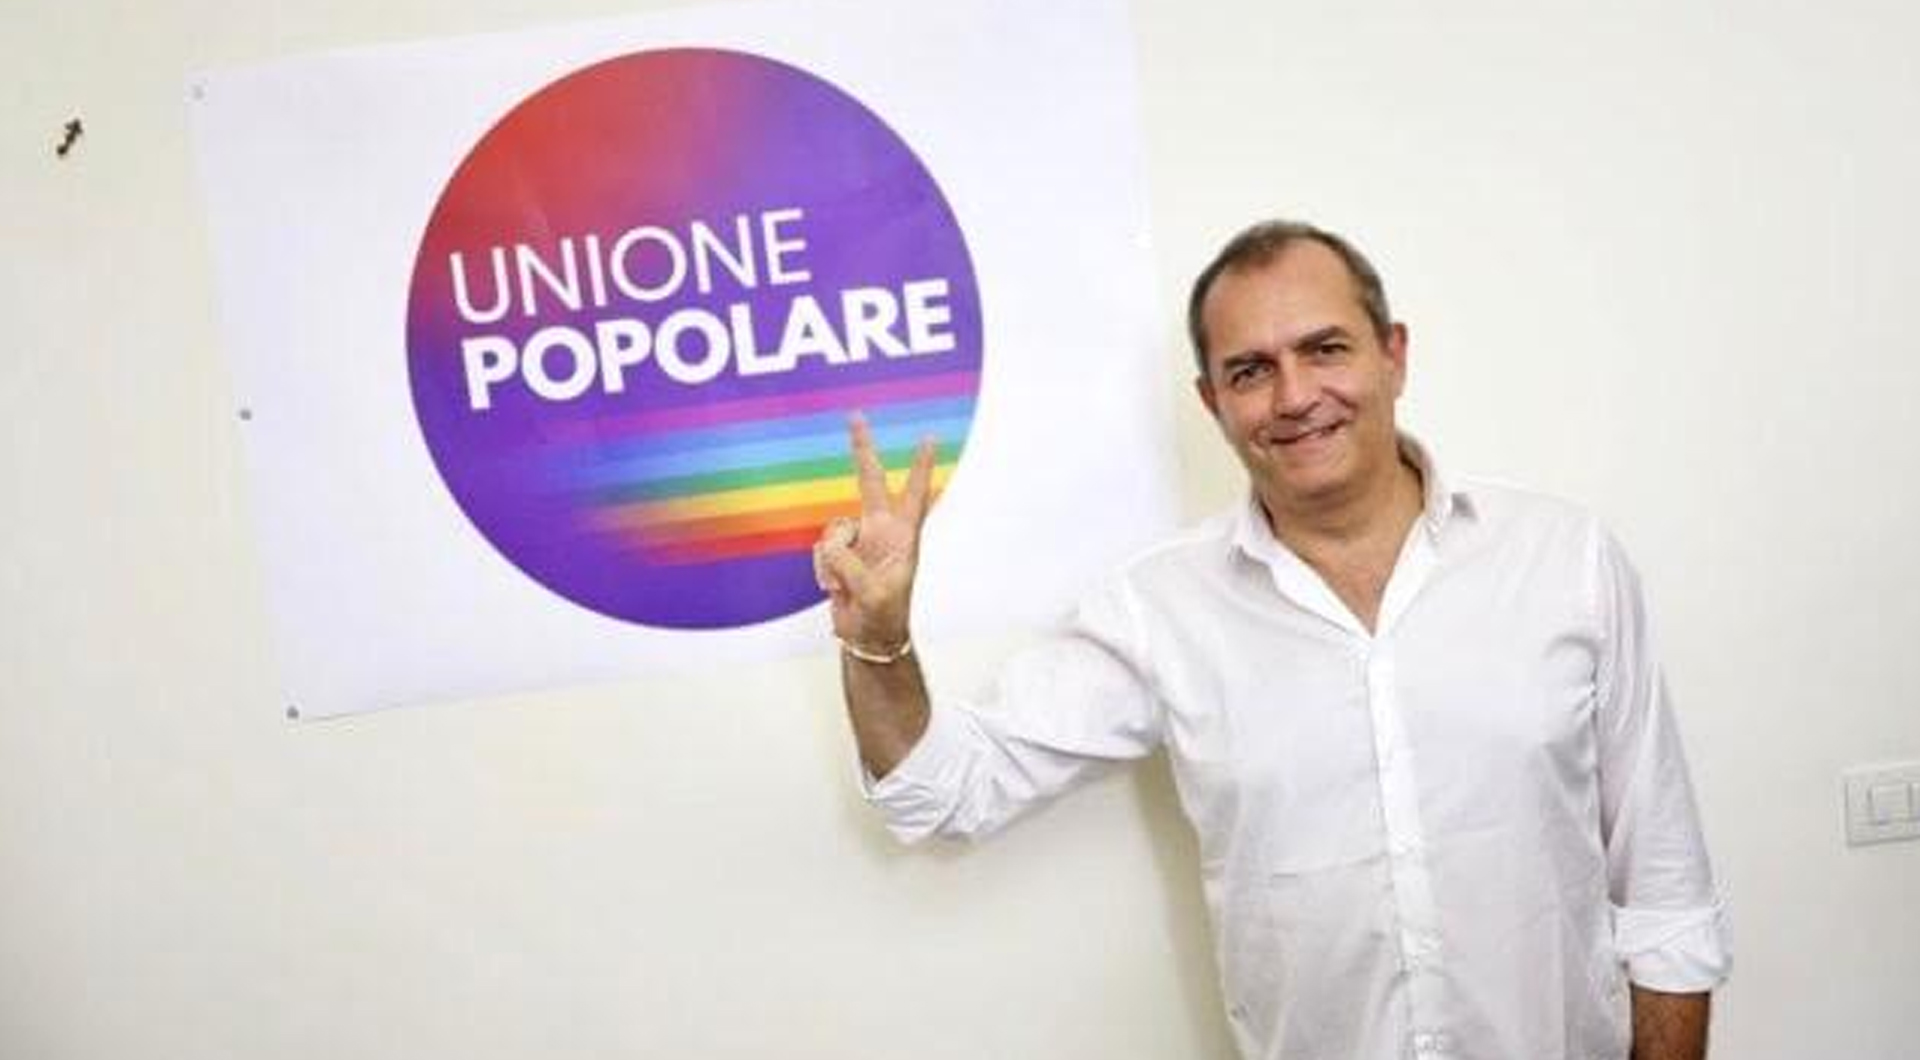 Luigi De Magistris presenta una nuova lista, “Unione popolare”, che vuole partecipare alle elezioni legislative del 25 settembre. È la settima lista “antisistema” che dovrà raccogliere le firme entro il 22 agosto